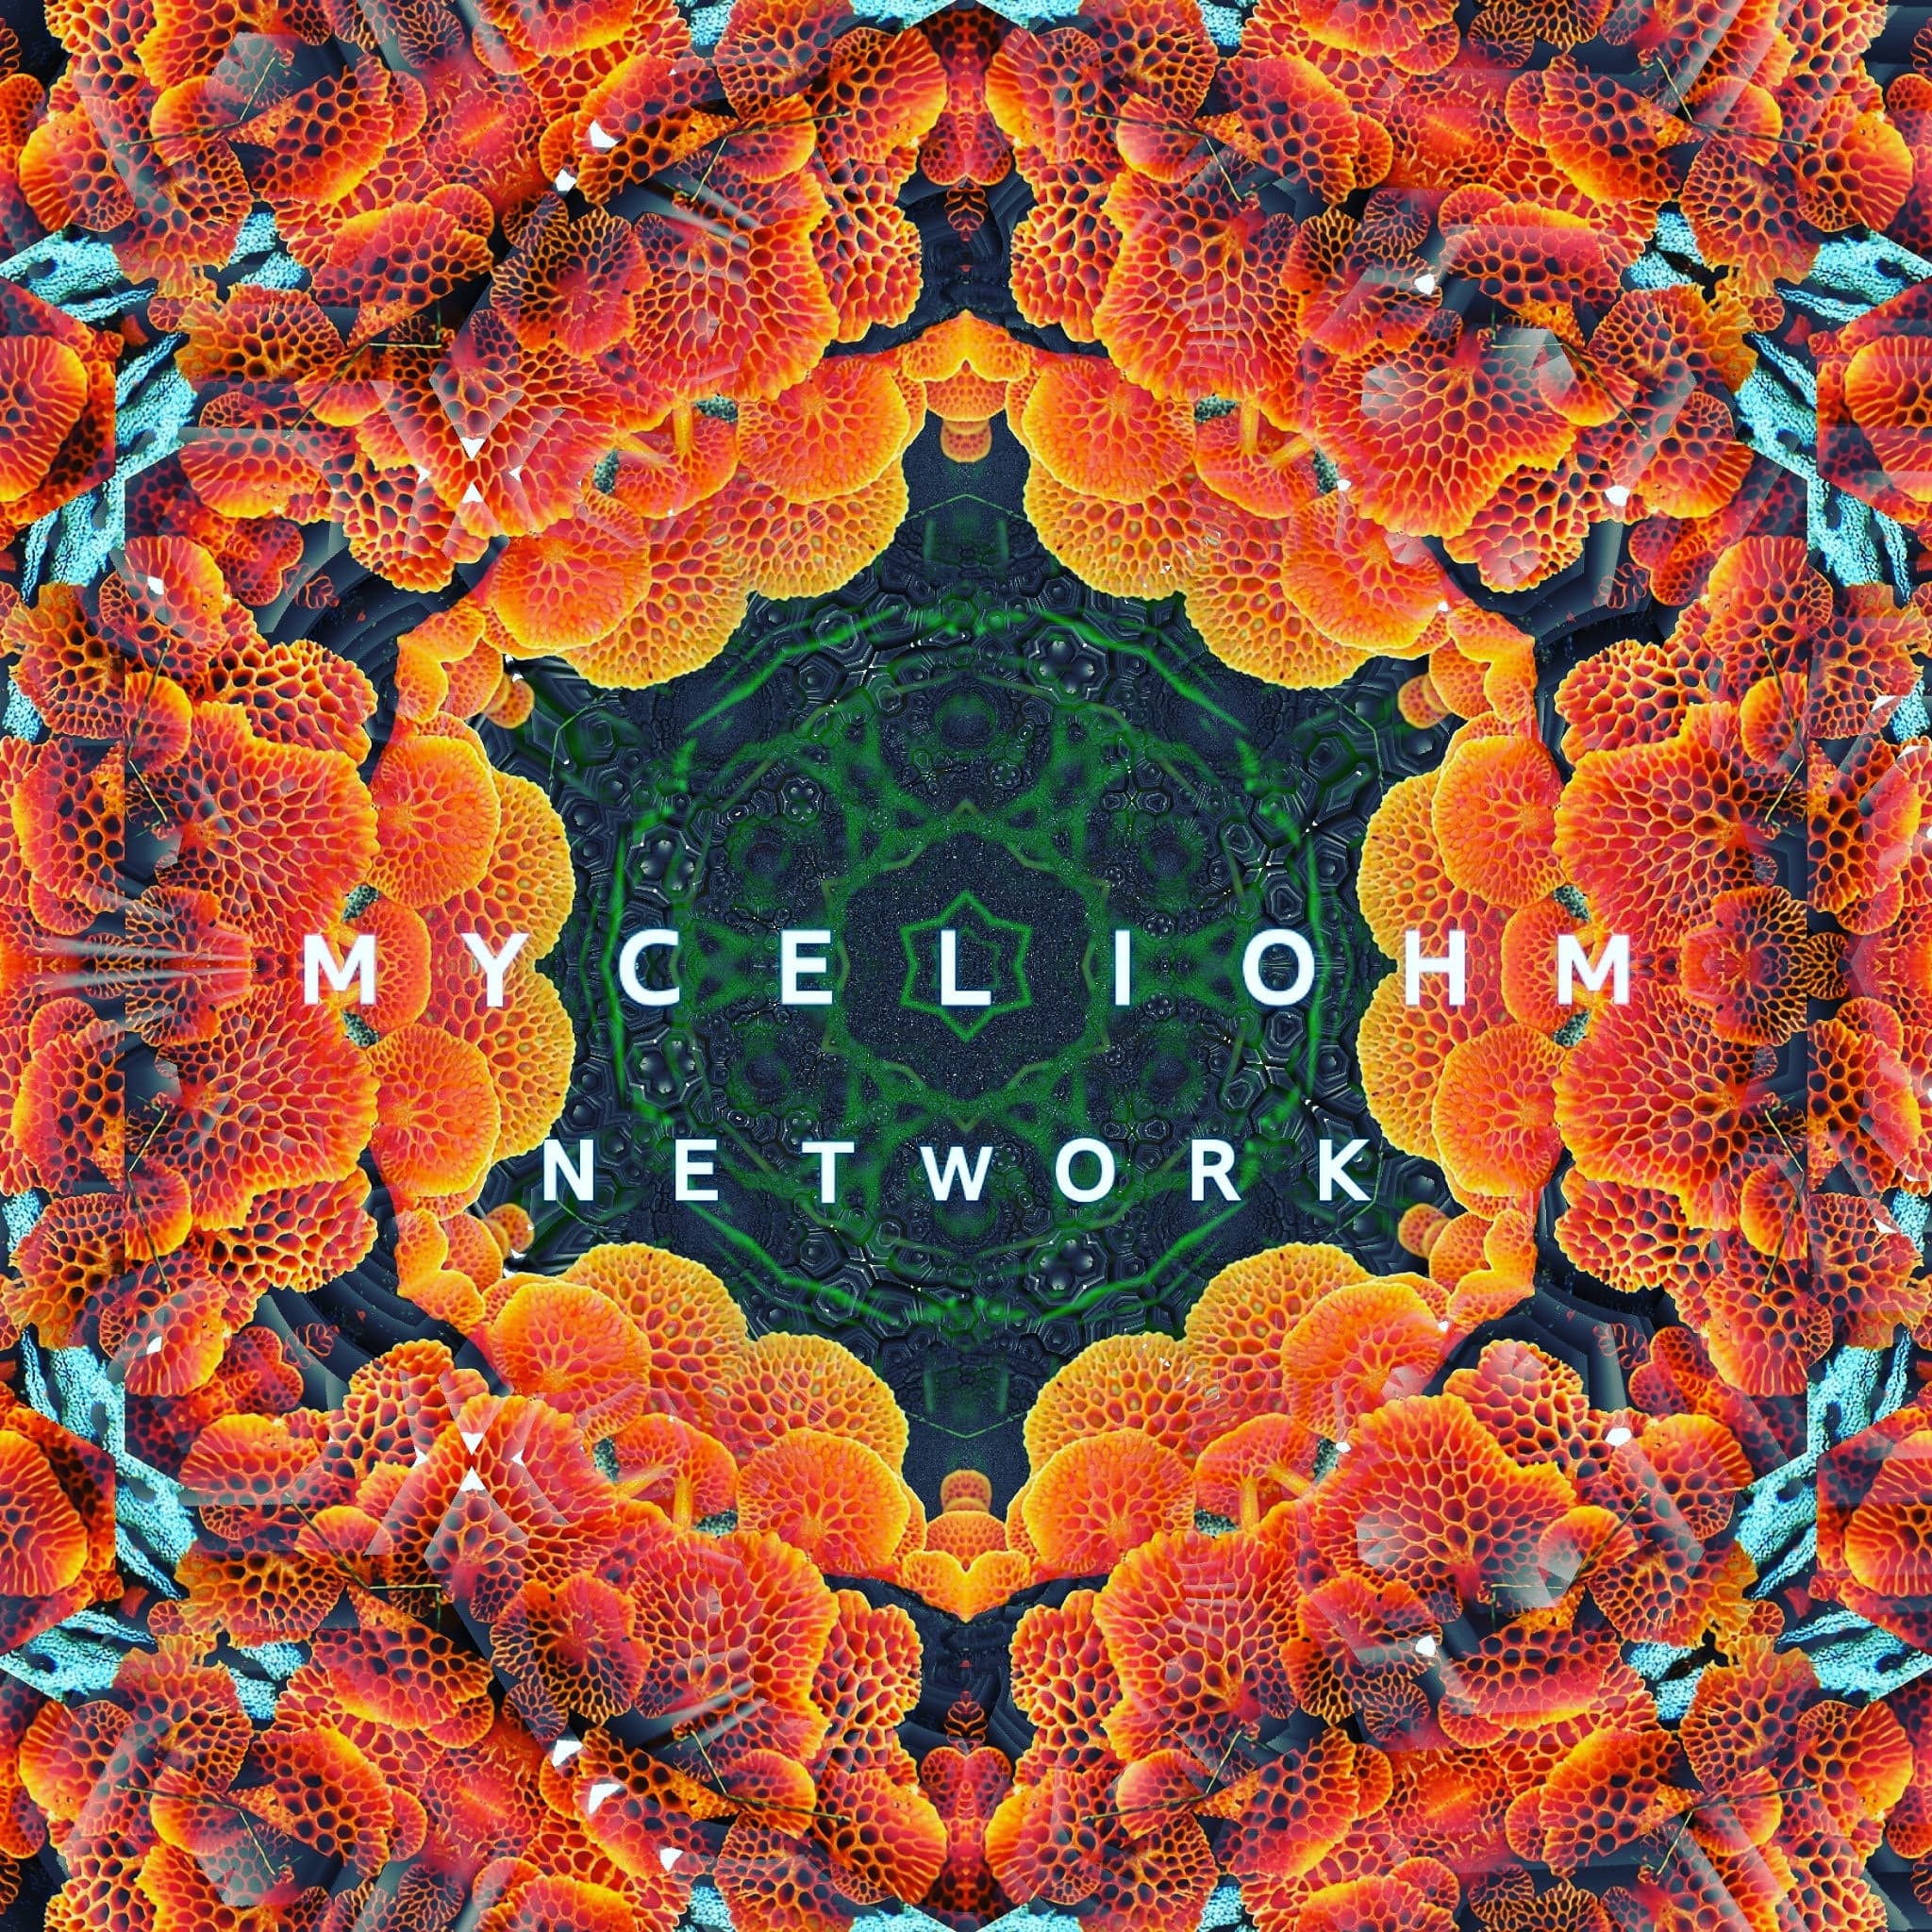 MyceliOhm Network